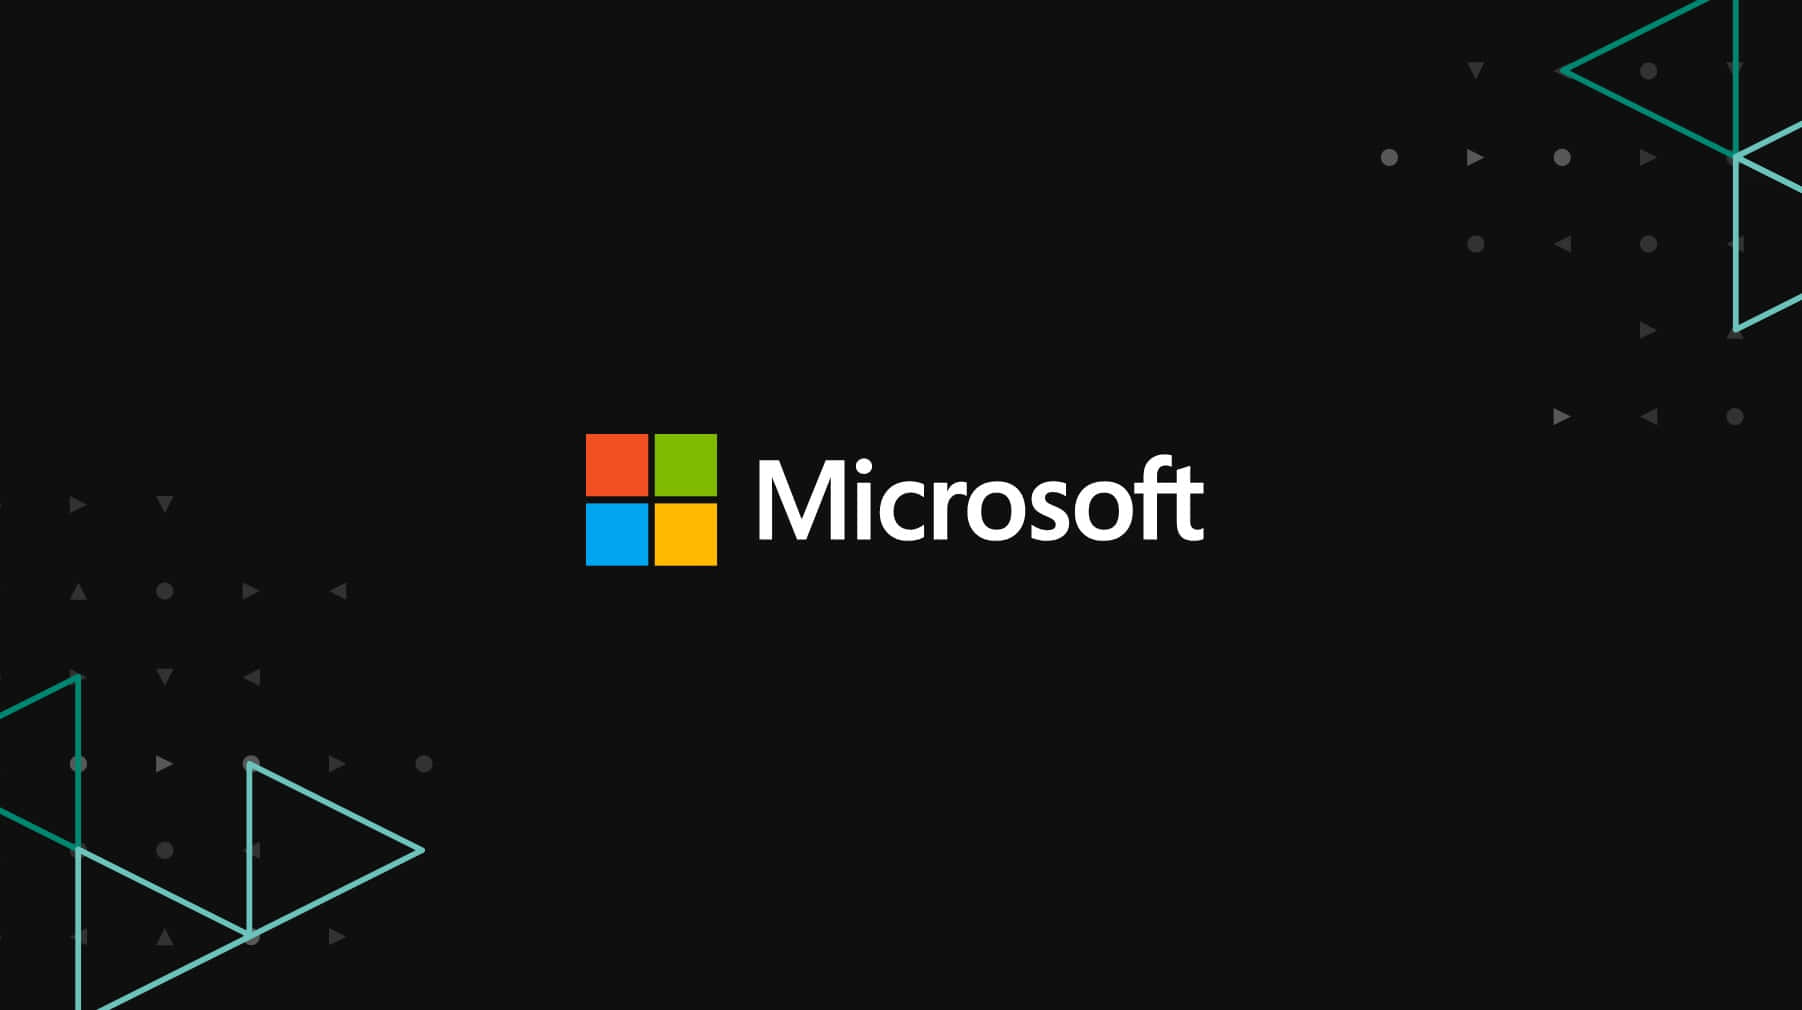 Microsoft giver produktivitet og samarbejde.